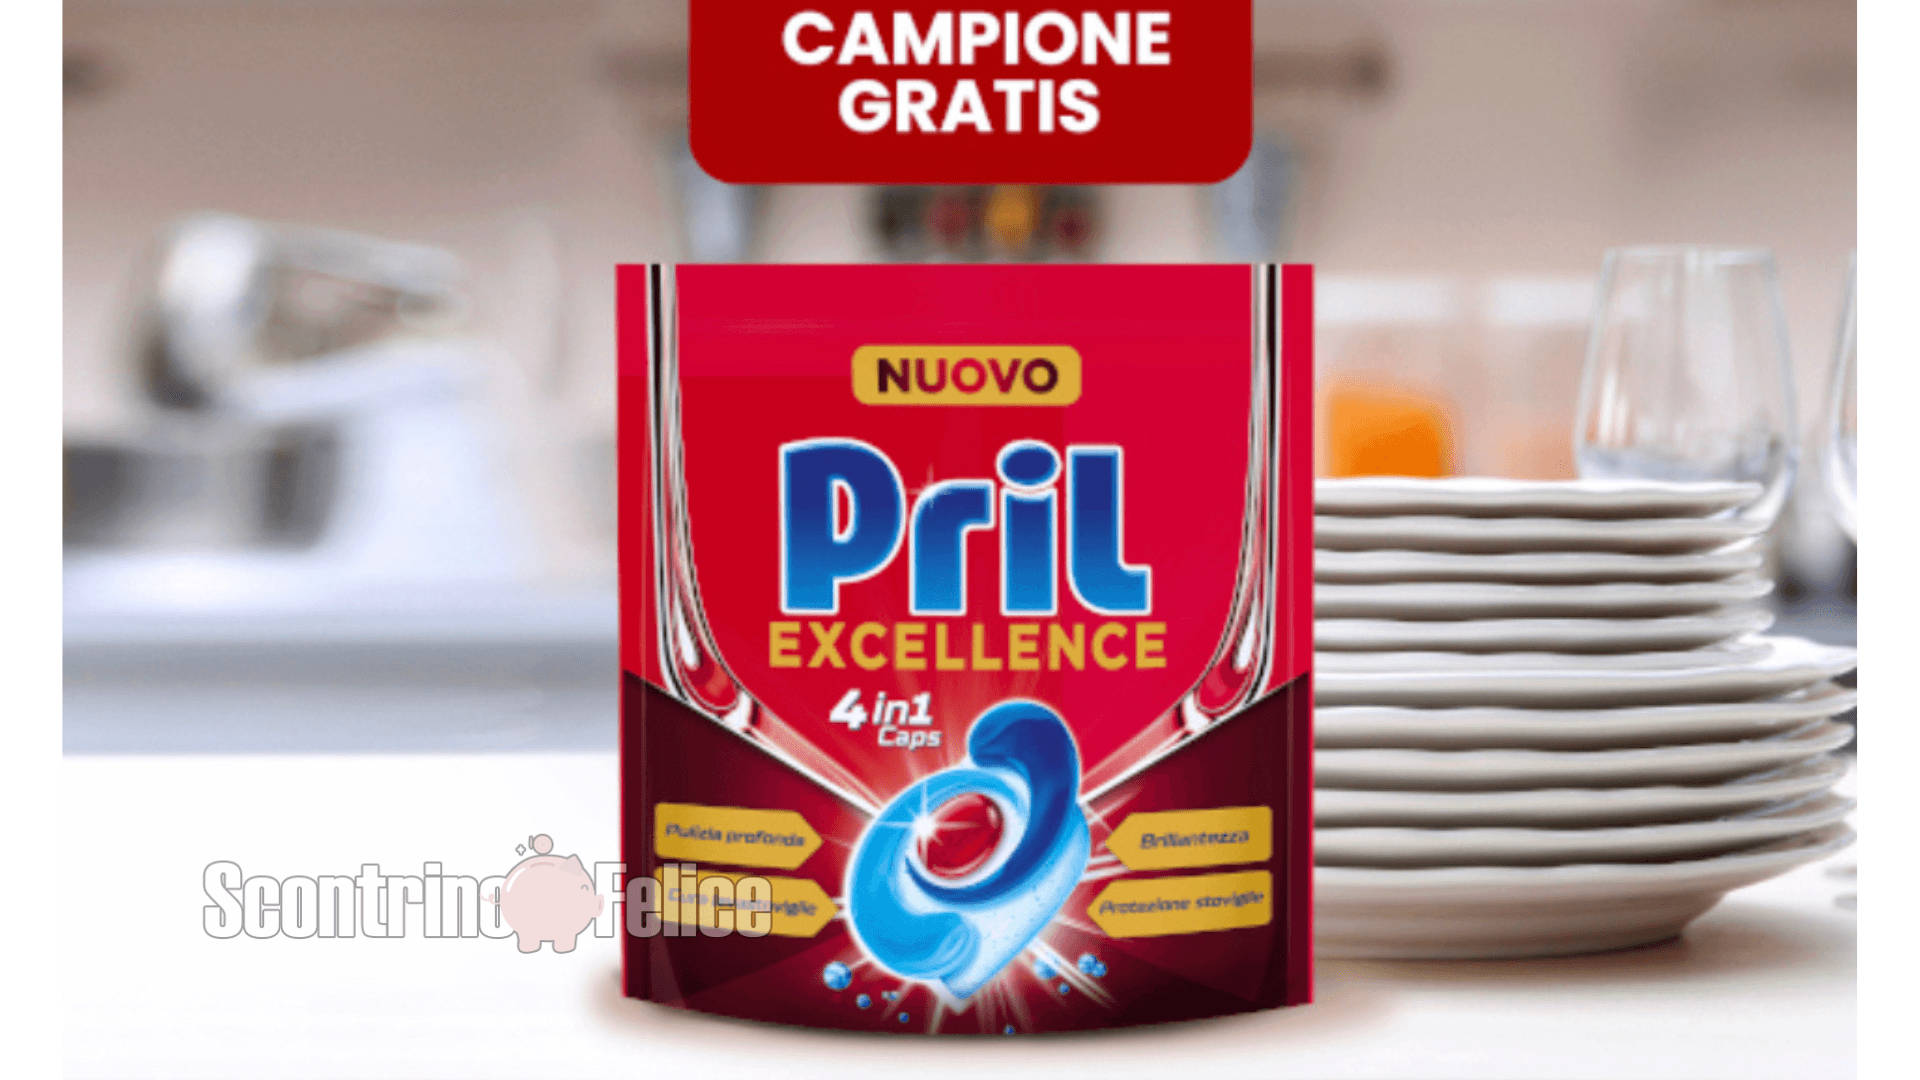 Pril Excellence 4in1 Caps: richiedi subito il campione gratuito! 1